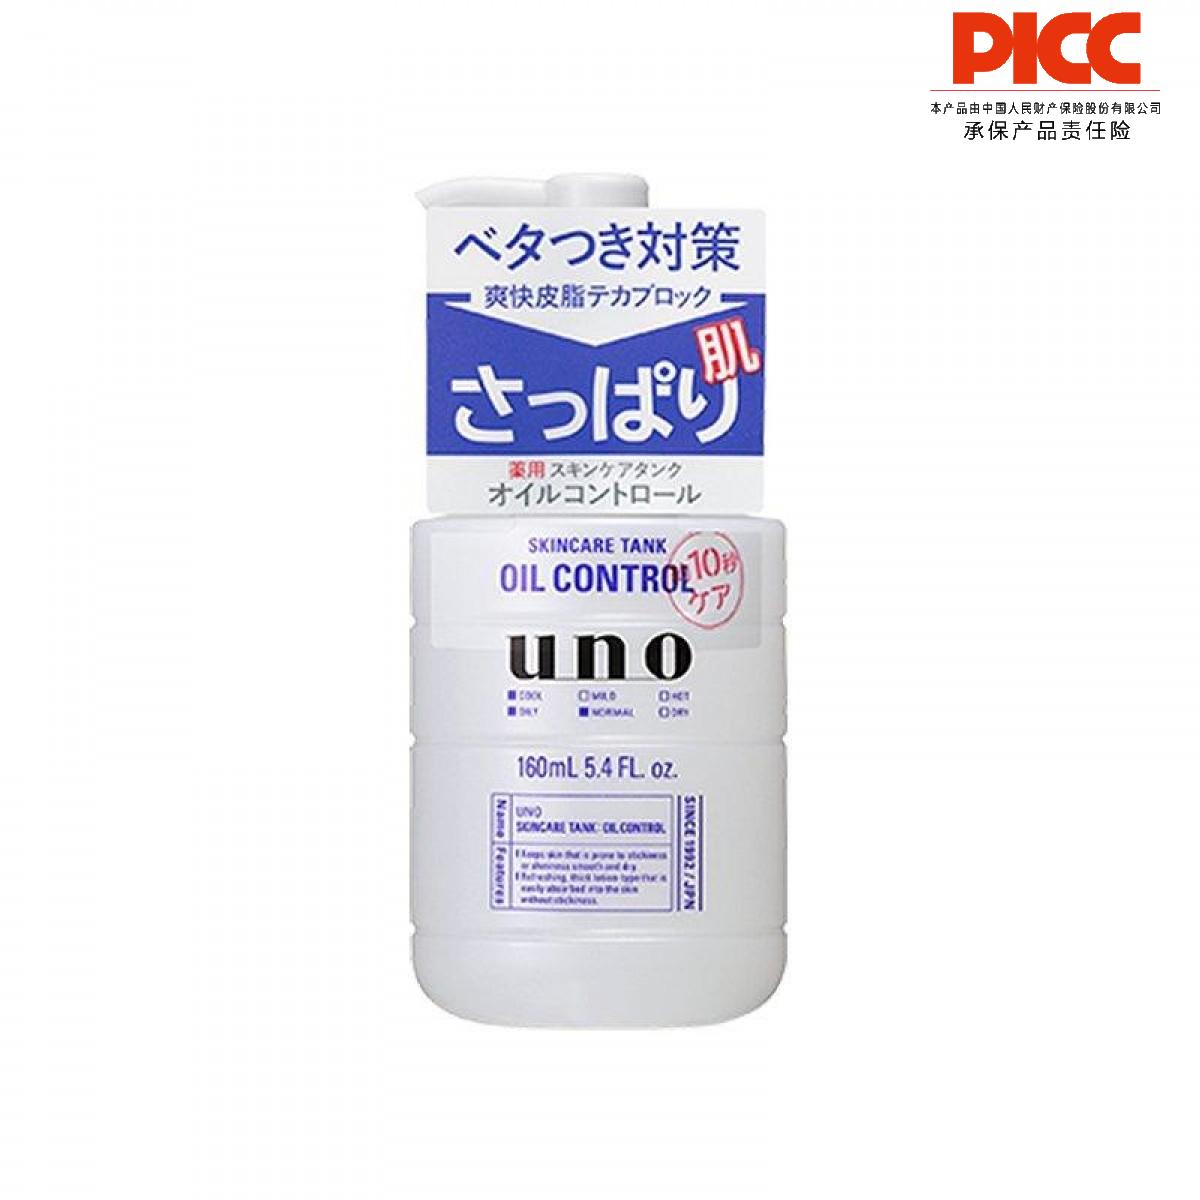 【保稅】日本資生堂UNO男士三合一調理乳液清爽型160ml